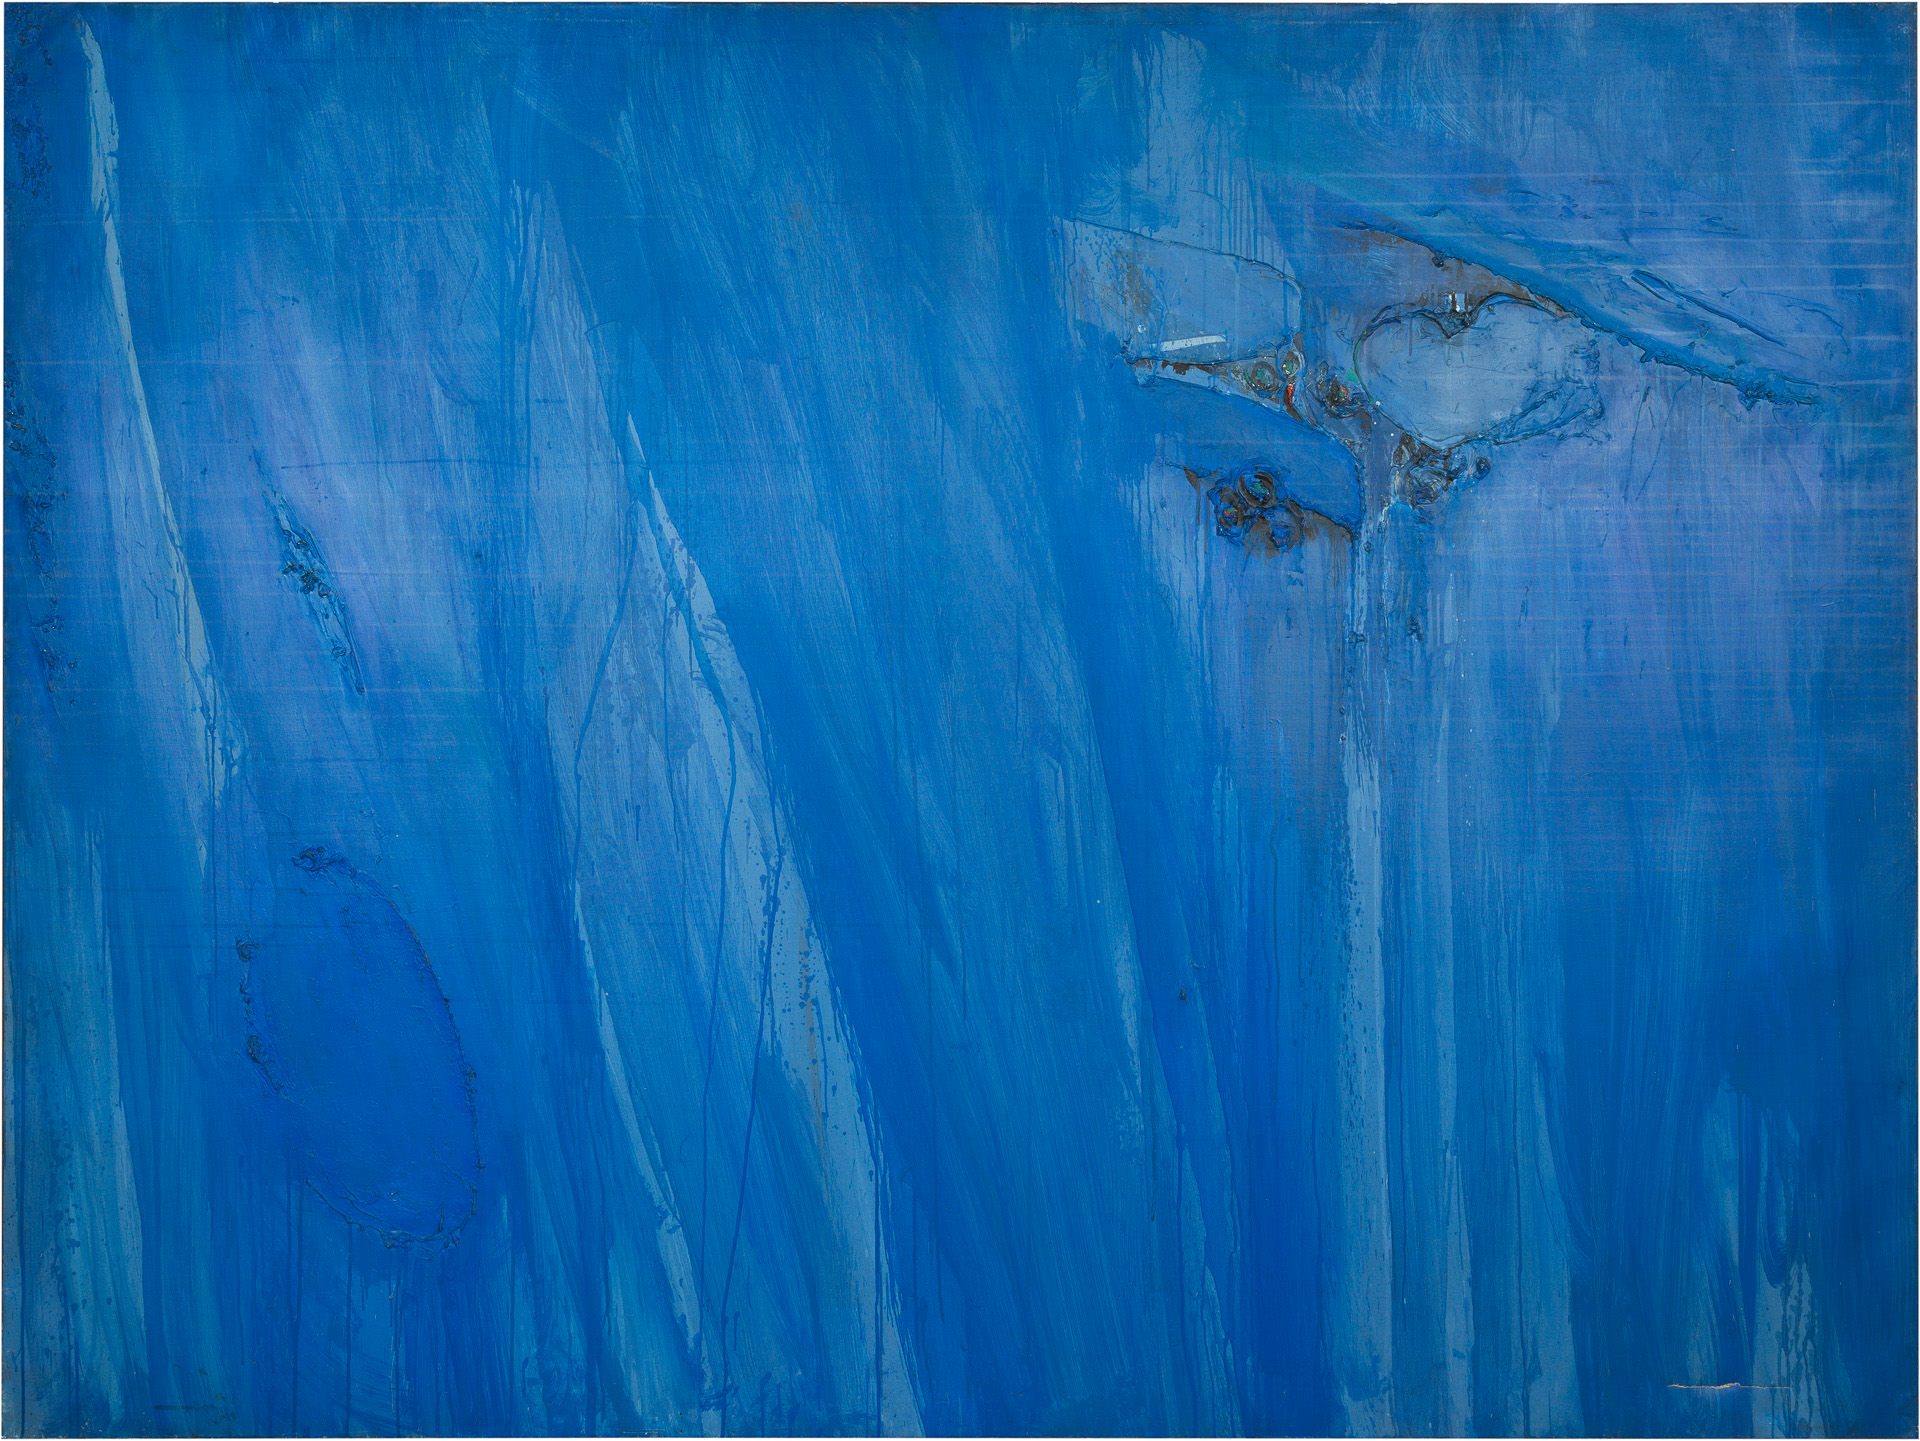 近藤竜男〈Blue Image〉, 油彩・カンヴァス, 184.0×243.7, 日本橋画廊（ニューヨーク）個展, 1961